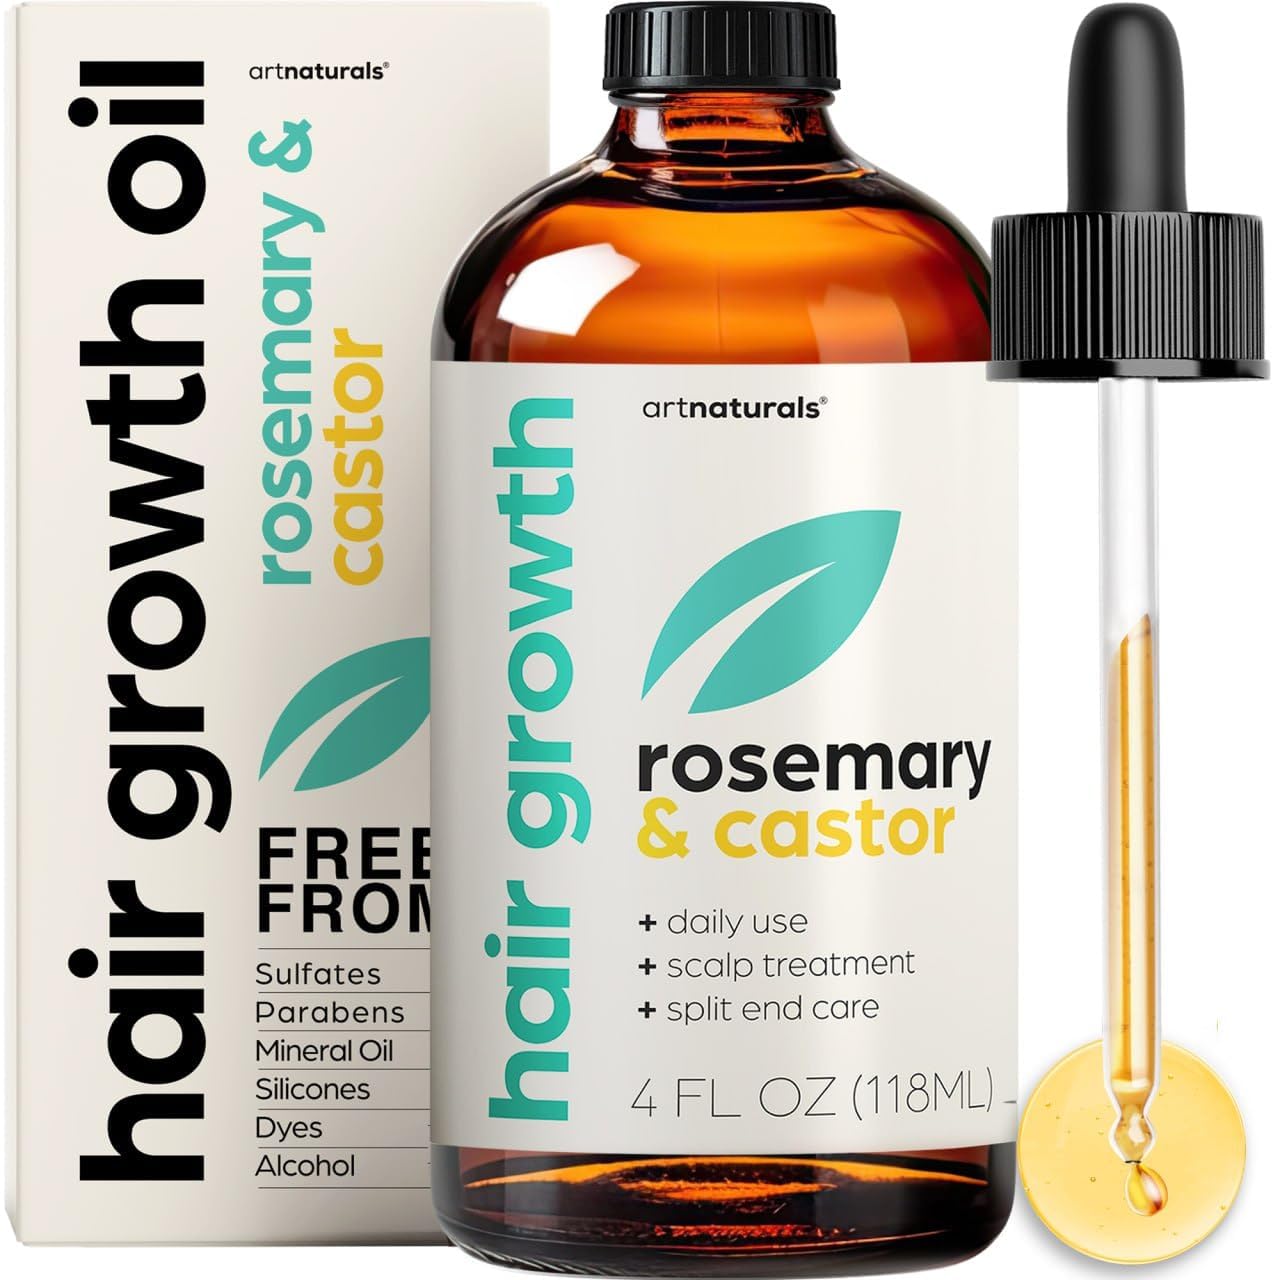 artnaturals Organic Rosemary Castor Hair Oil